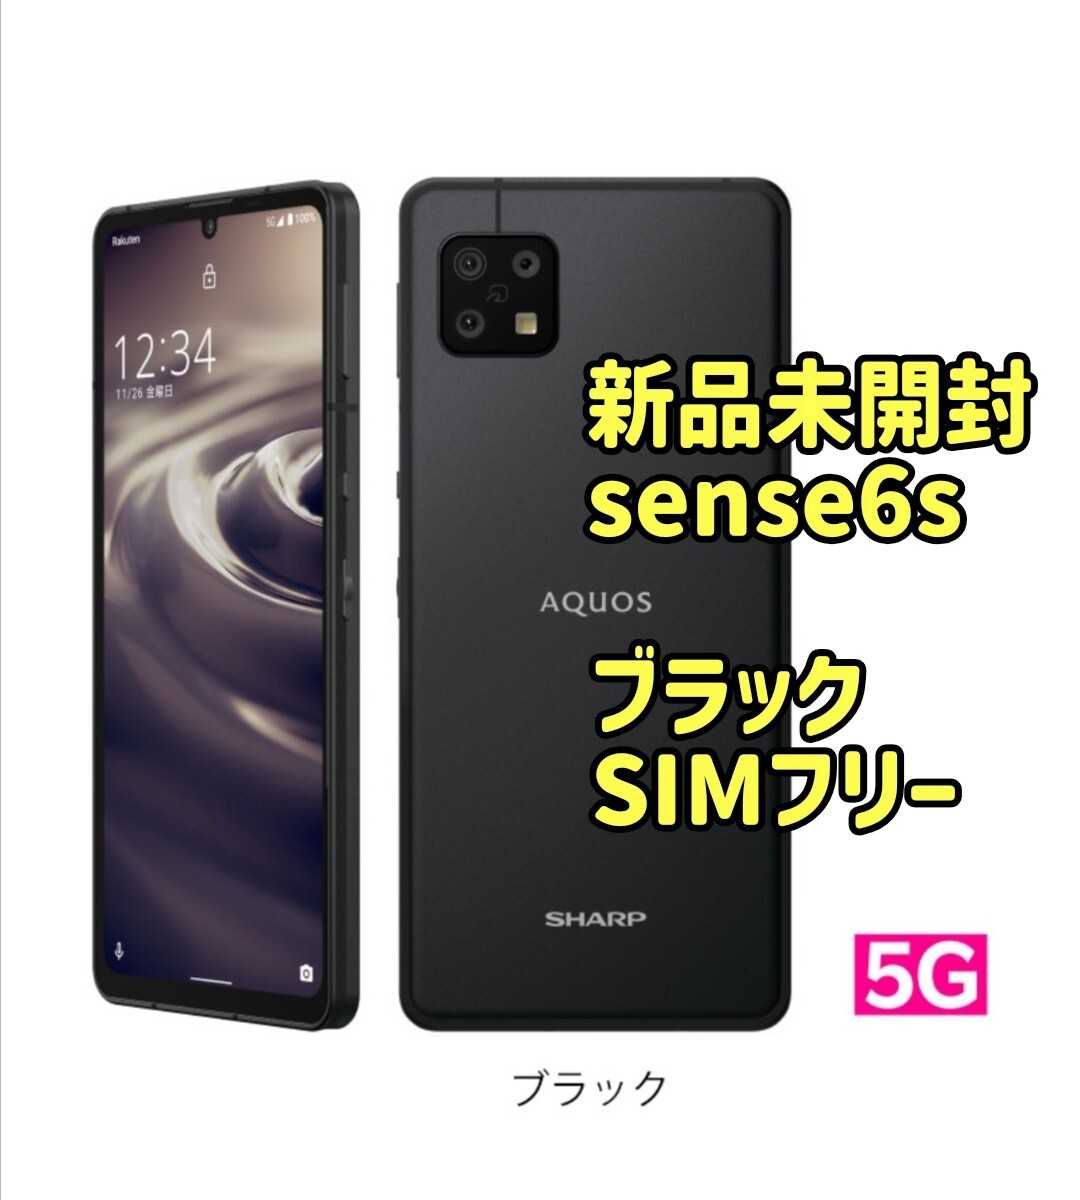 新品未開封/残債なし AQUOS sense6s 5G 64GB SH-RM19s ブラック SIMフリーの画像1